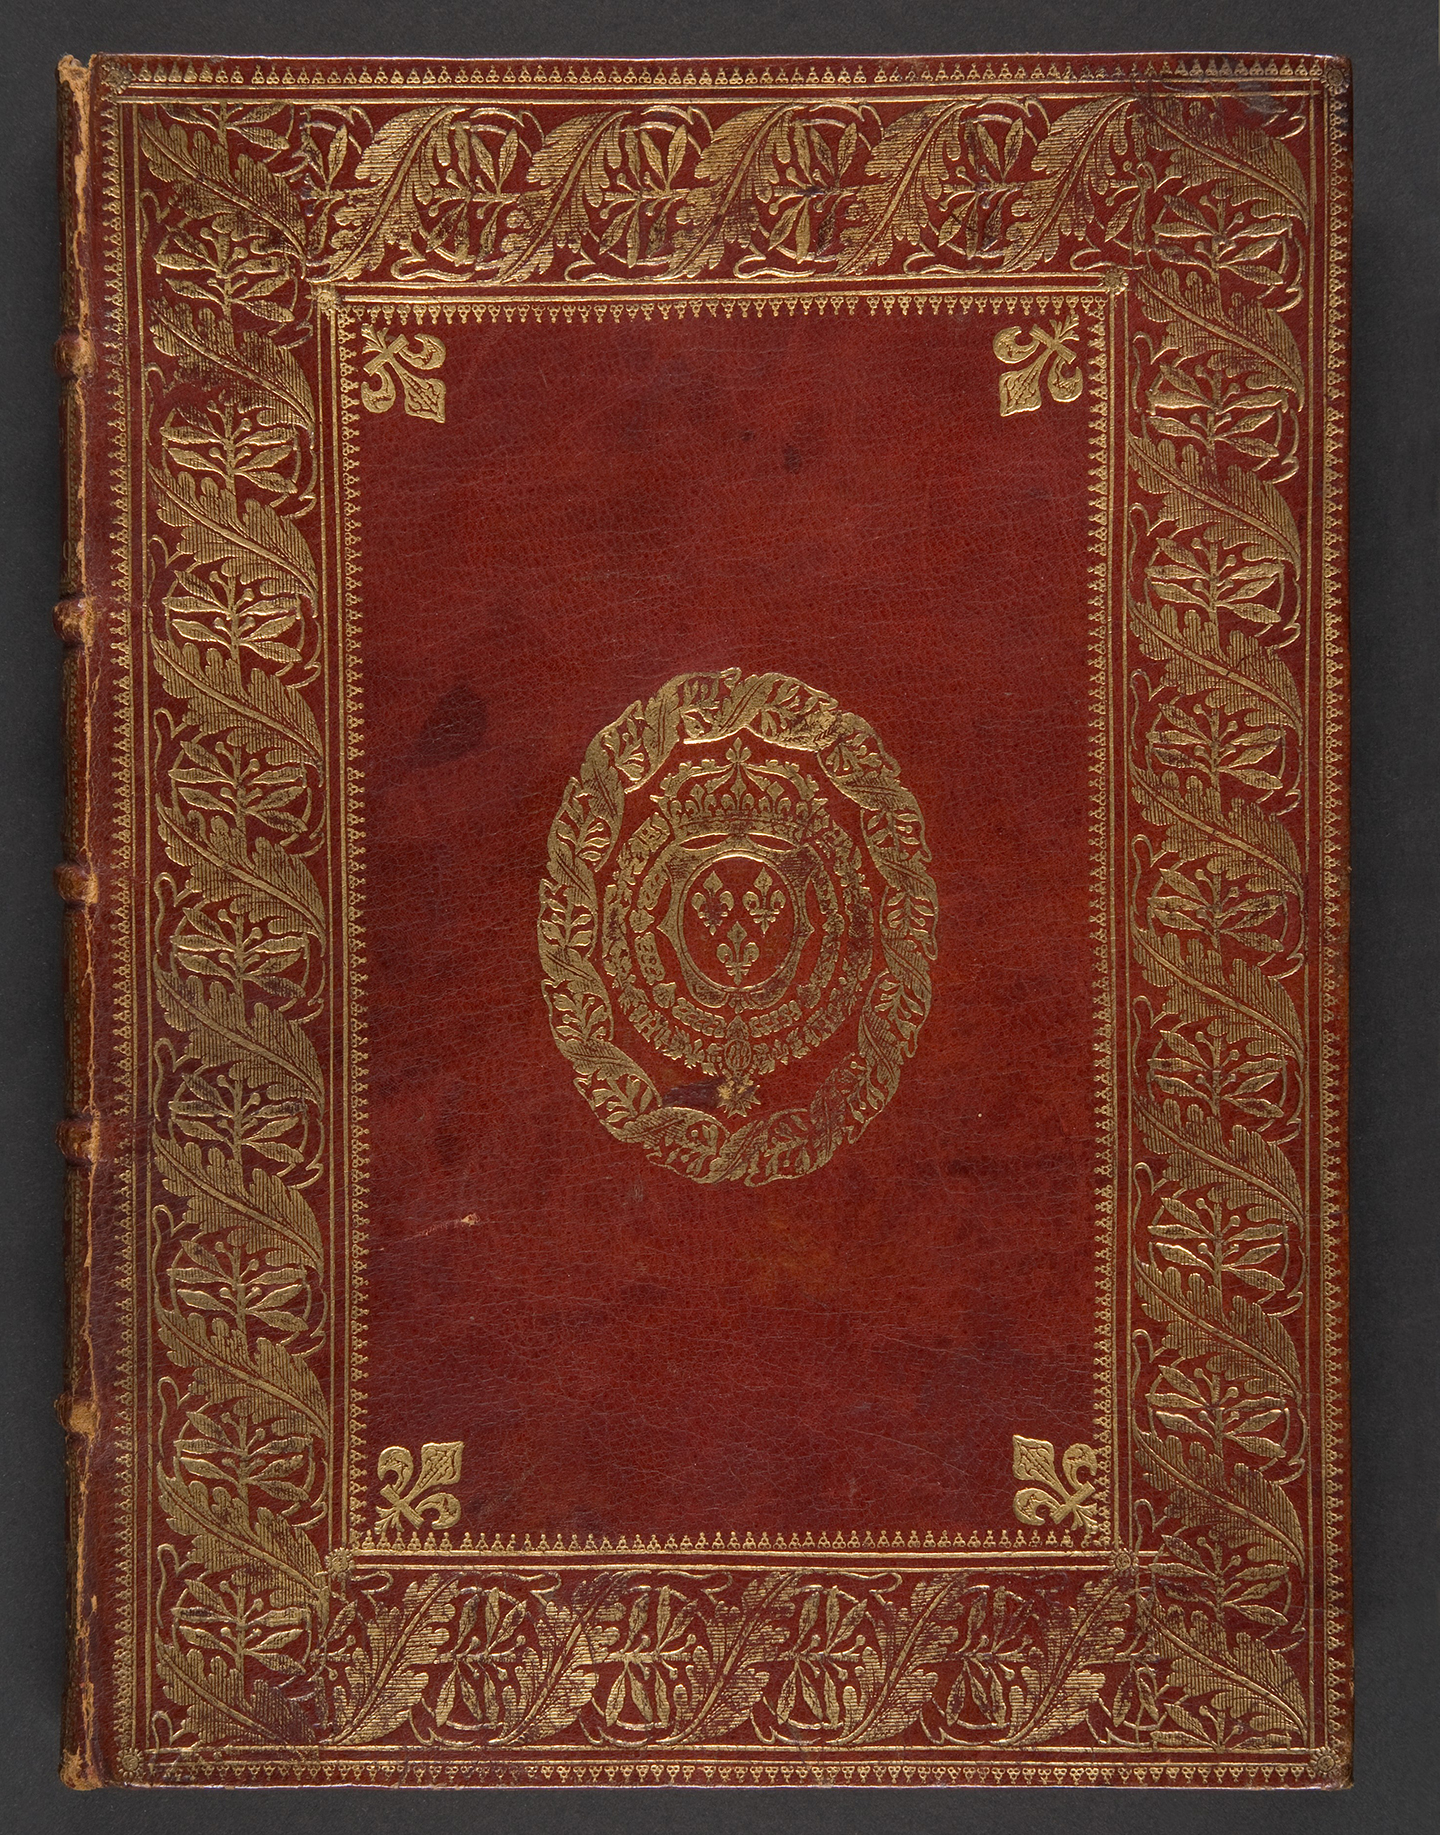 Bản thảo từng thuộc về thư viện của Vua Louis XV, do Padeloup đóng bìa, khoảng năm 1740. Bìa Morocco màu đỏ đương thời, đóng gáy phủ vàng; kích thước: 9 13/16 inch. Món quà của nhà sưu tập nghệ thuật Jayne Wrightsman, Bảo tàng Nghệ thuật Metropolitan, Thành phố New York. (Ảnh: Tài liệu công cộng)